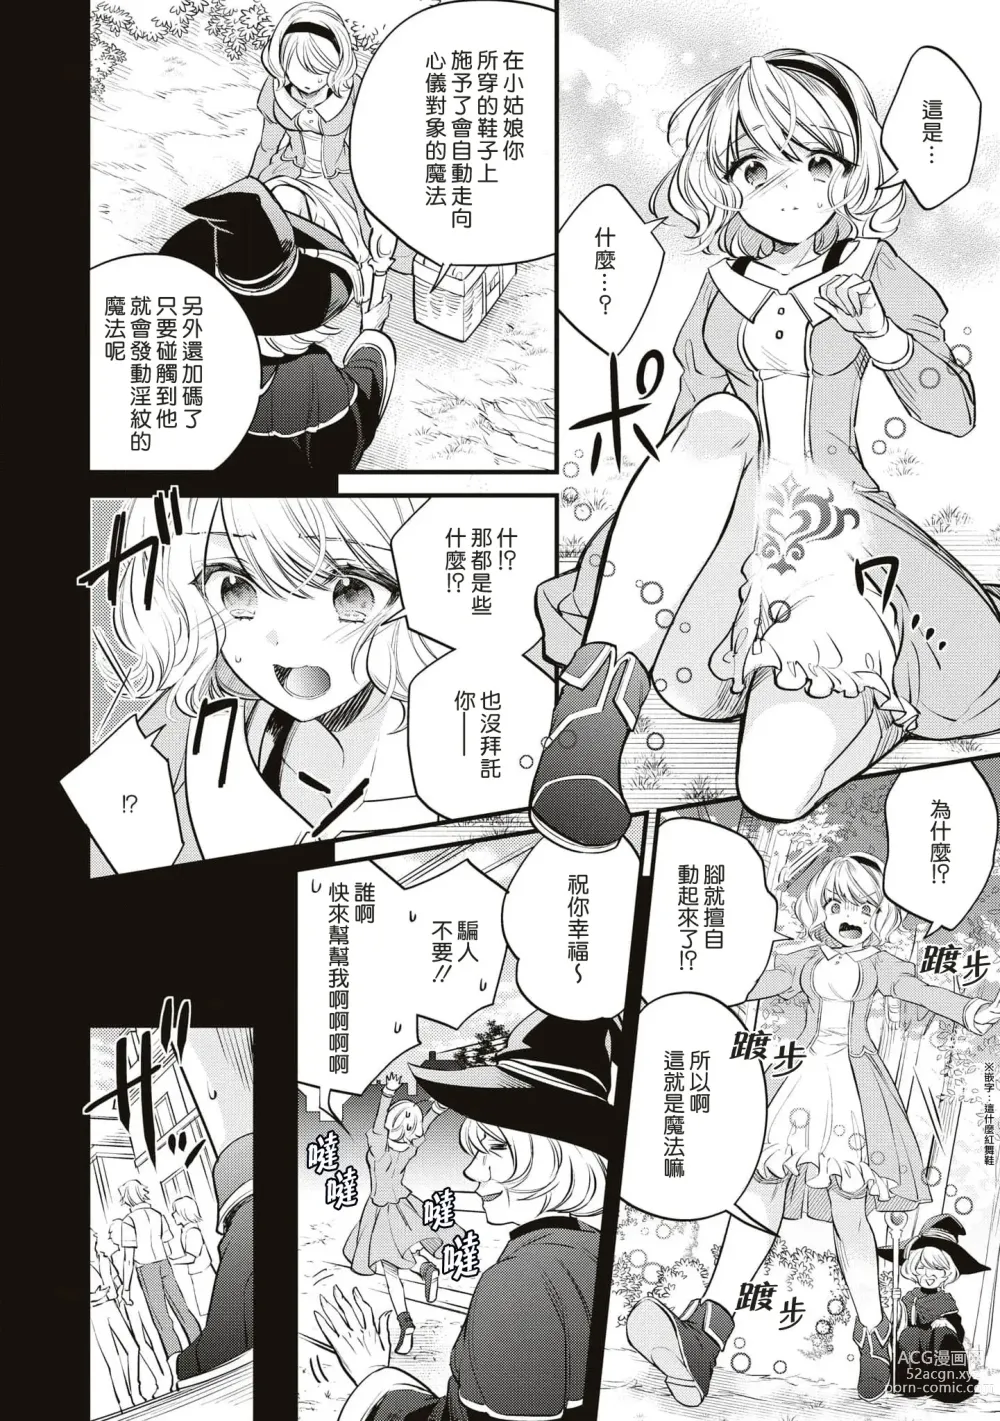 Page 5 of manga 不经意间帮助过的魔女向我报恩，所以被下了会自动朝喜欢的人走去，并会在碰触他时被施予淫纹的魔法。